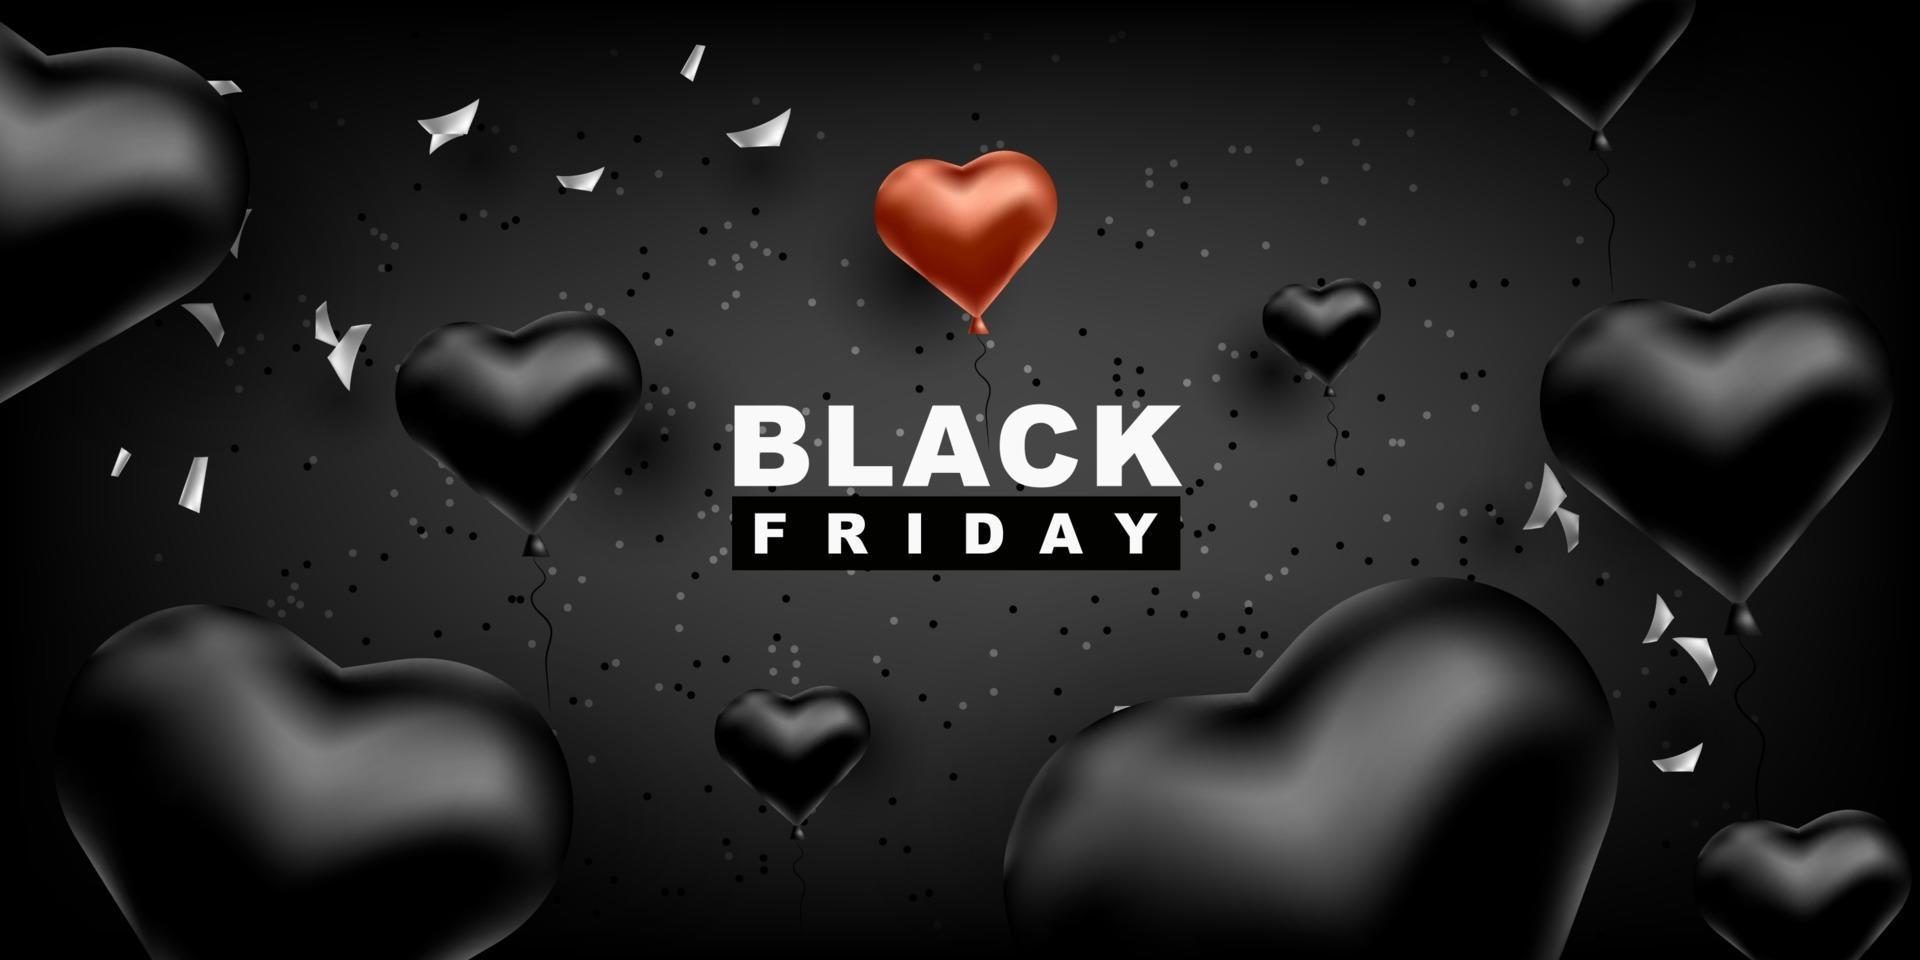 zwarte vrijdag vector achtergrond. donkere sjabloon voor een banner met zwarte ballonnen hartvorm